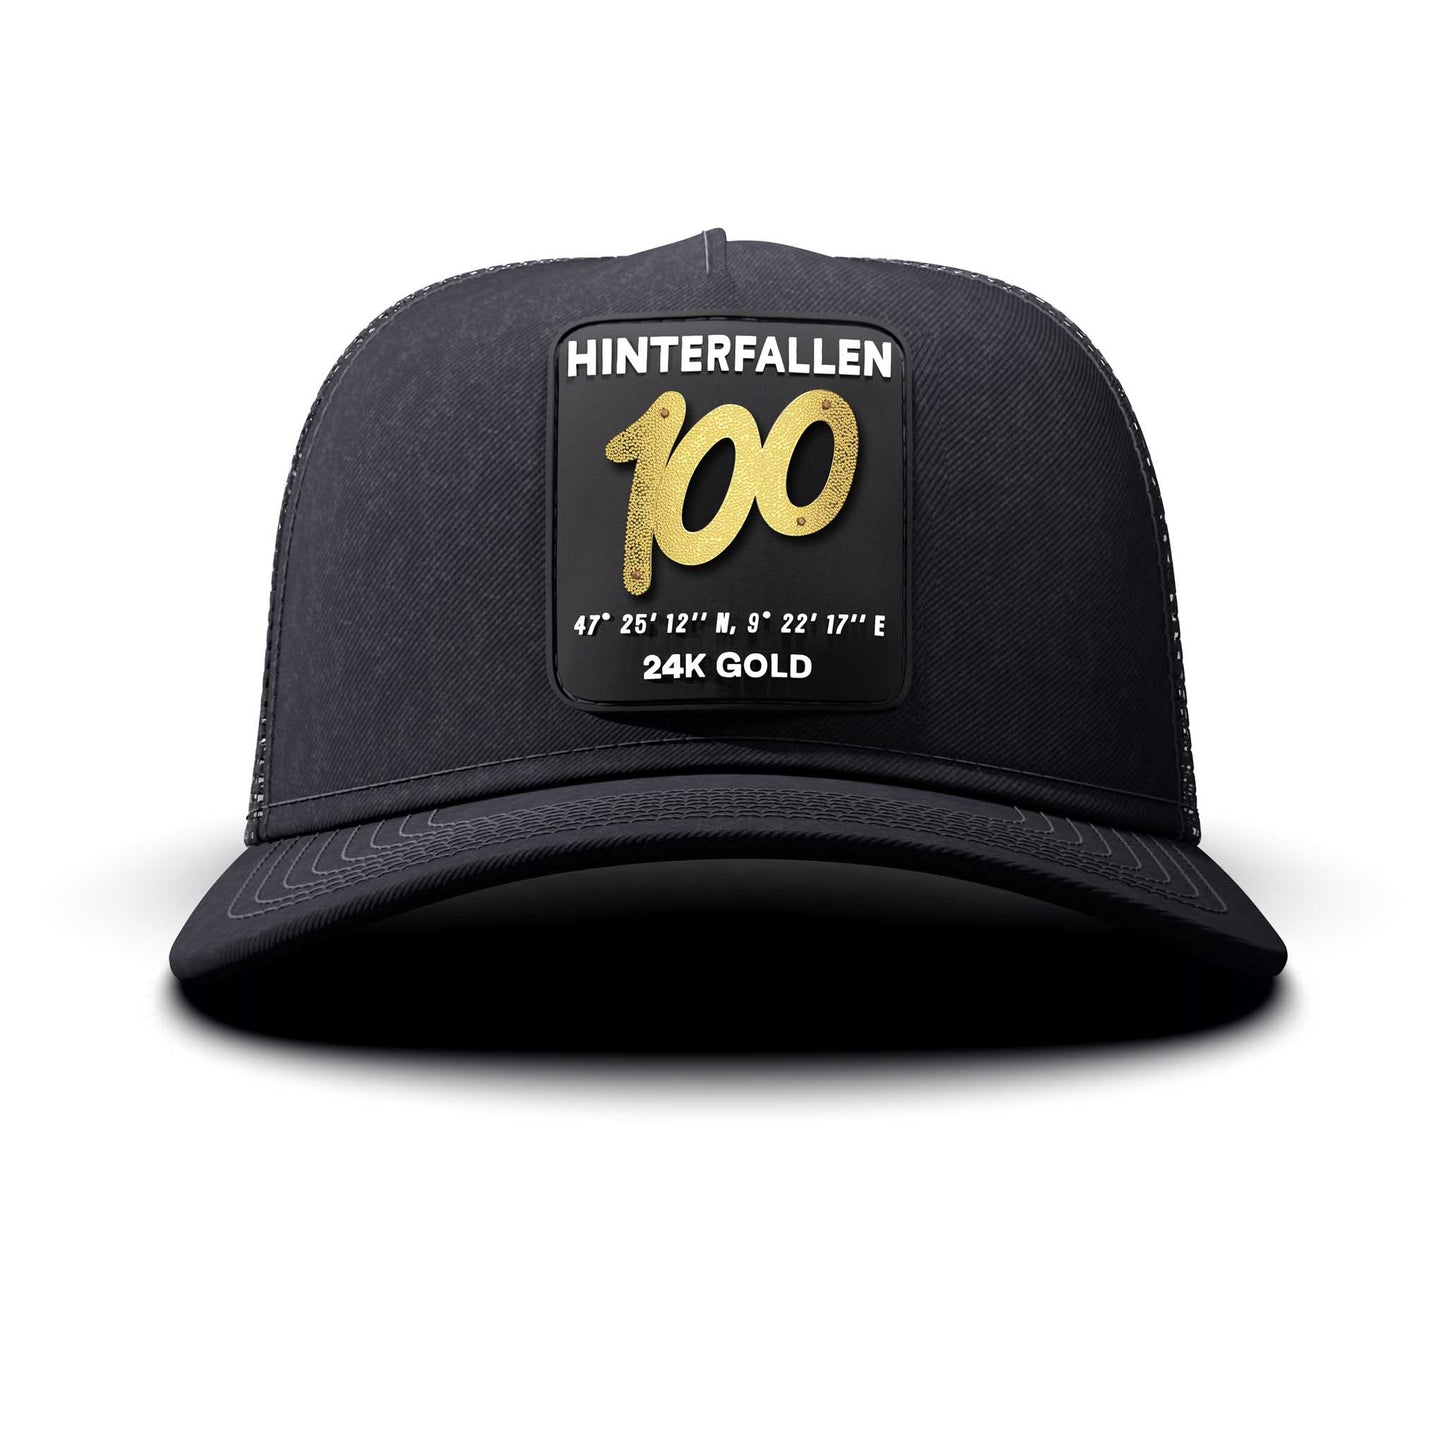 100 - Hinterfallen Patch, Trucker Cap, curved